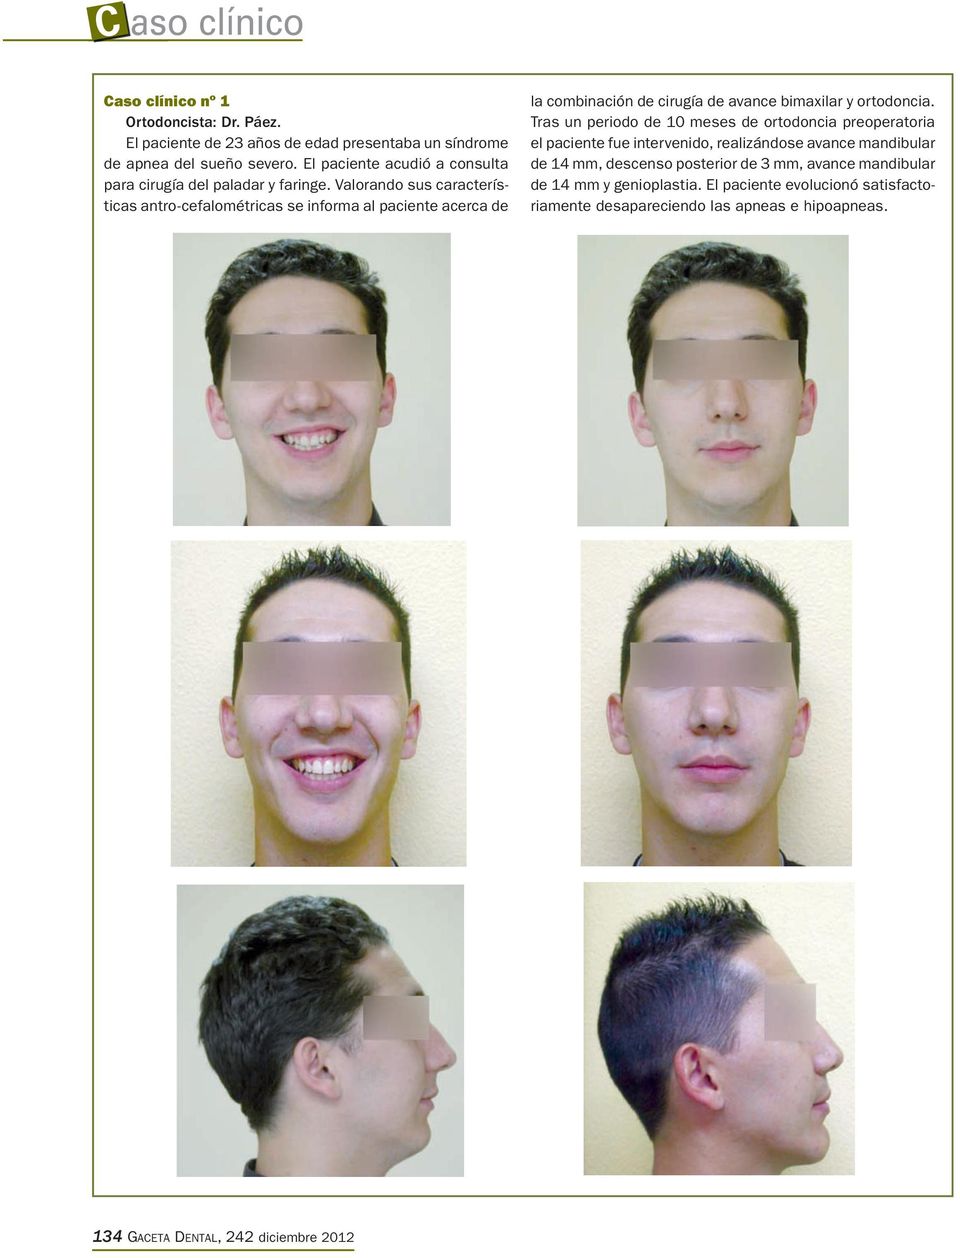 Valorando sus características antro-cefalométricas se informa al paciente acerca de la combinación de cirugía de avance bimaxilar y ortodoncia.